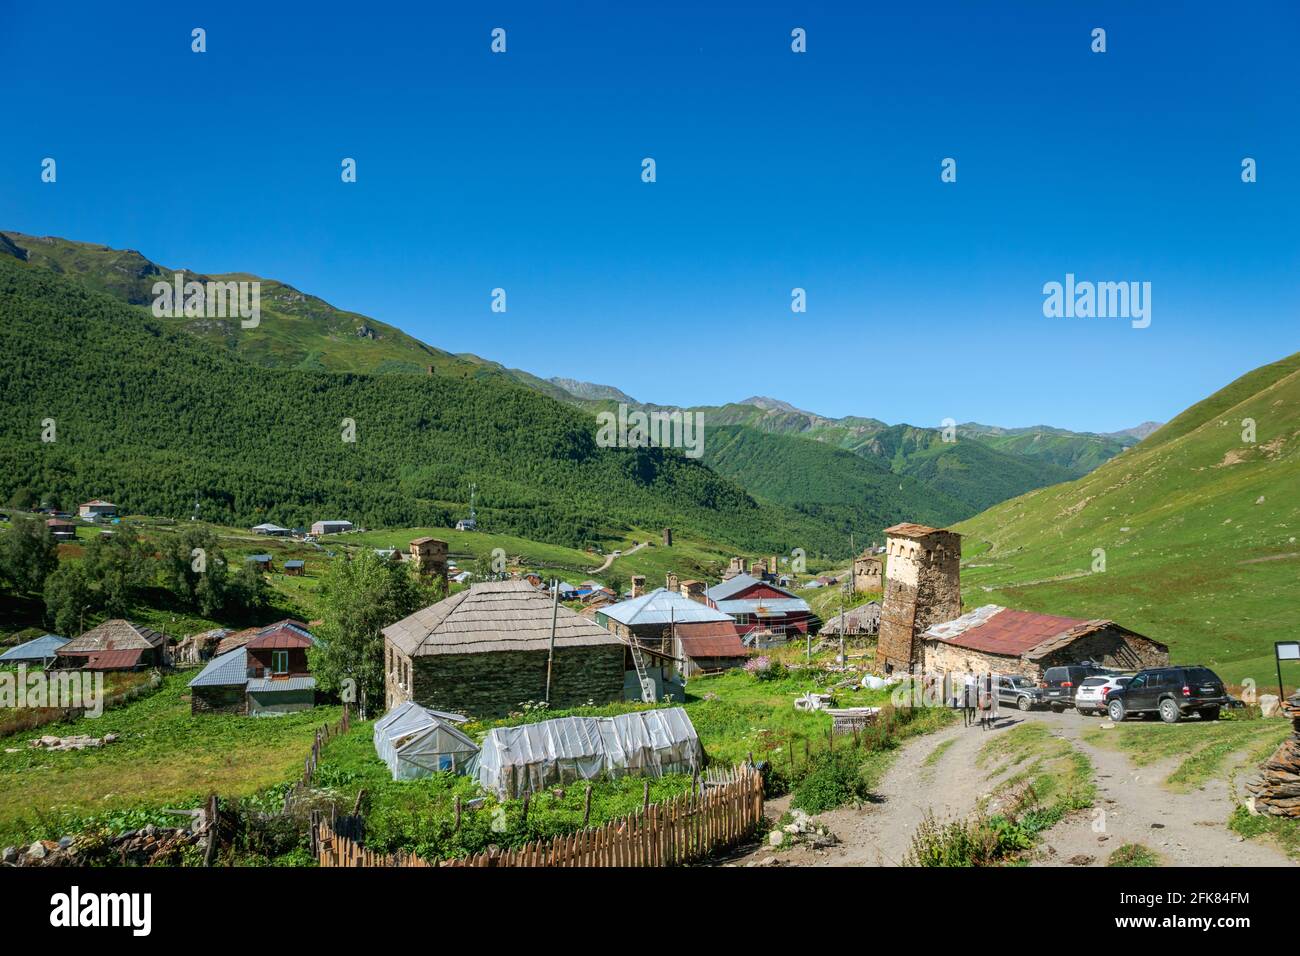 Paysage du village d'Ushguli dans la région de Svaneti, Géorgie - site classé au patrimoine mondial de l'UNESCO Banque D'Images